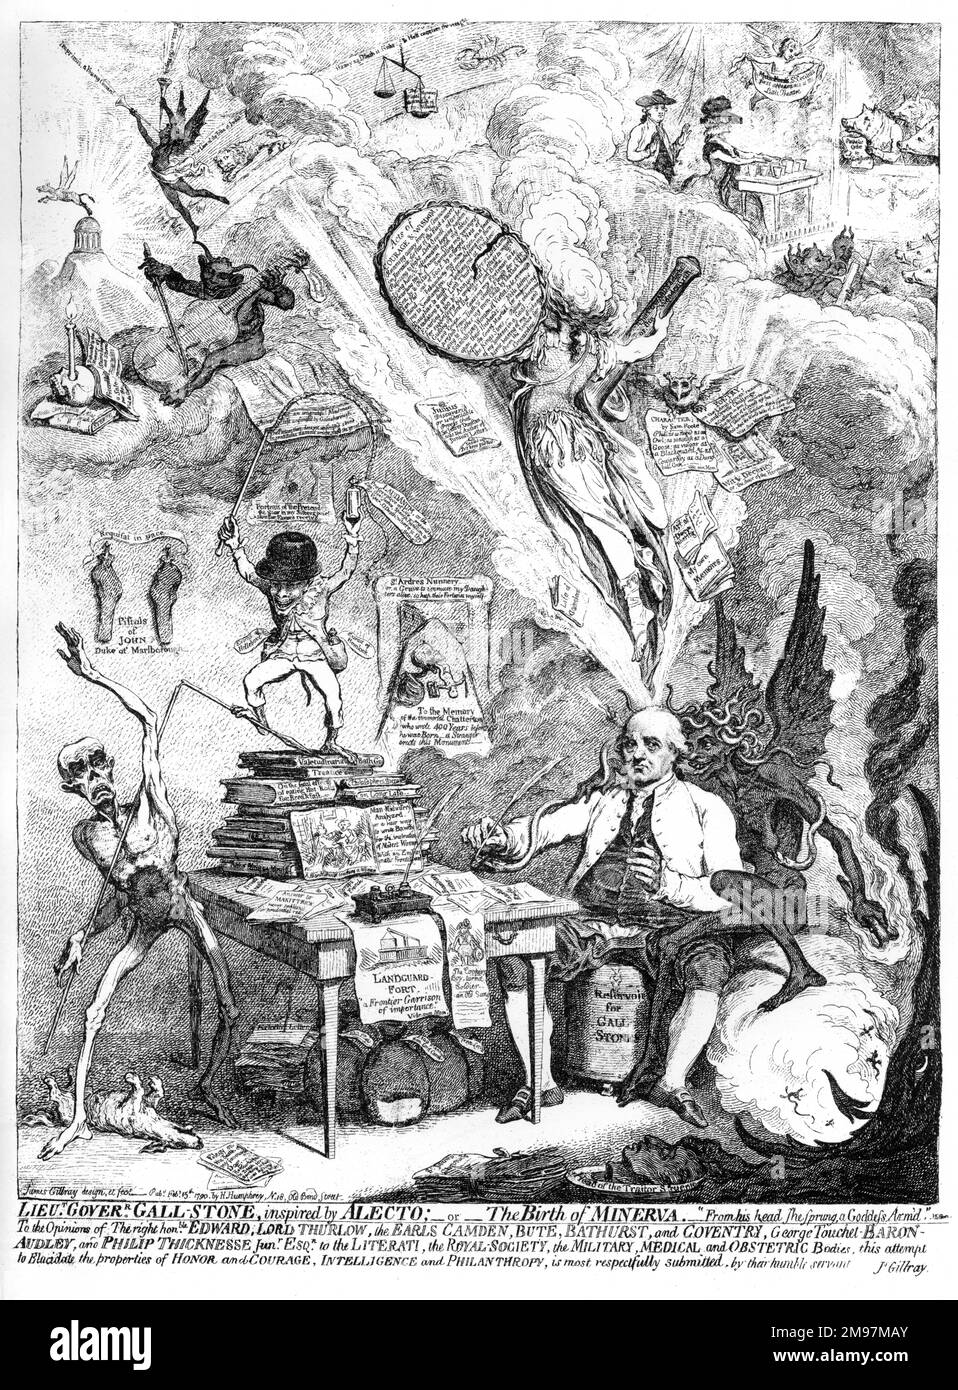 Caricature, lieutenant-gouverneur Gall-Stone, inspiré par Alecto; ou la naissance de Minerva, par James Gillray (publié par H Humphrey, 15 février 1790). Montrant Philip Thicknesse, l'ancien gouverneur du fort de Landguard à Suffolk, écrivant à une table. Il écoute Alecto qui chuchote doucement dans son oreille, tandis qu'une déesse se lève de sa tête. Thicknesse a prétendu avoir découvert le peintre Thomas Gainsborough (un ami de son ami), mais a également été suspecté de crimes tels que l'extorsion, le chantage et la diffamation. Il a écrit des publications sur Gainsborough, ainsi que sur l'homme-sage-femme. Banque D'Images